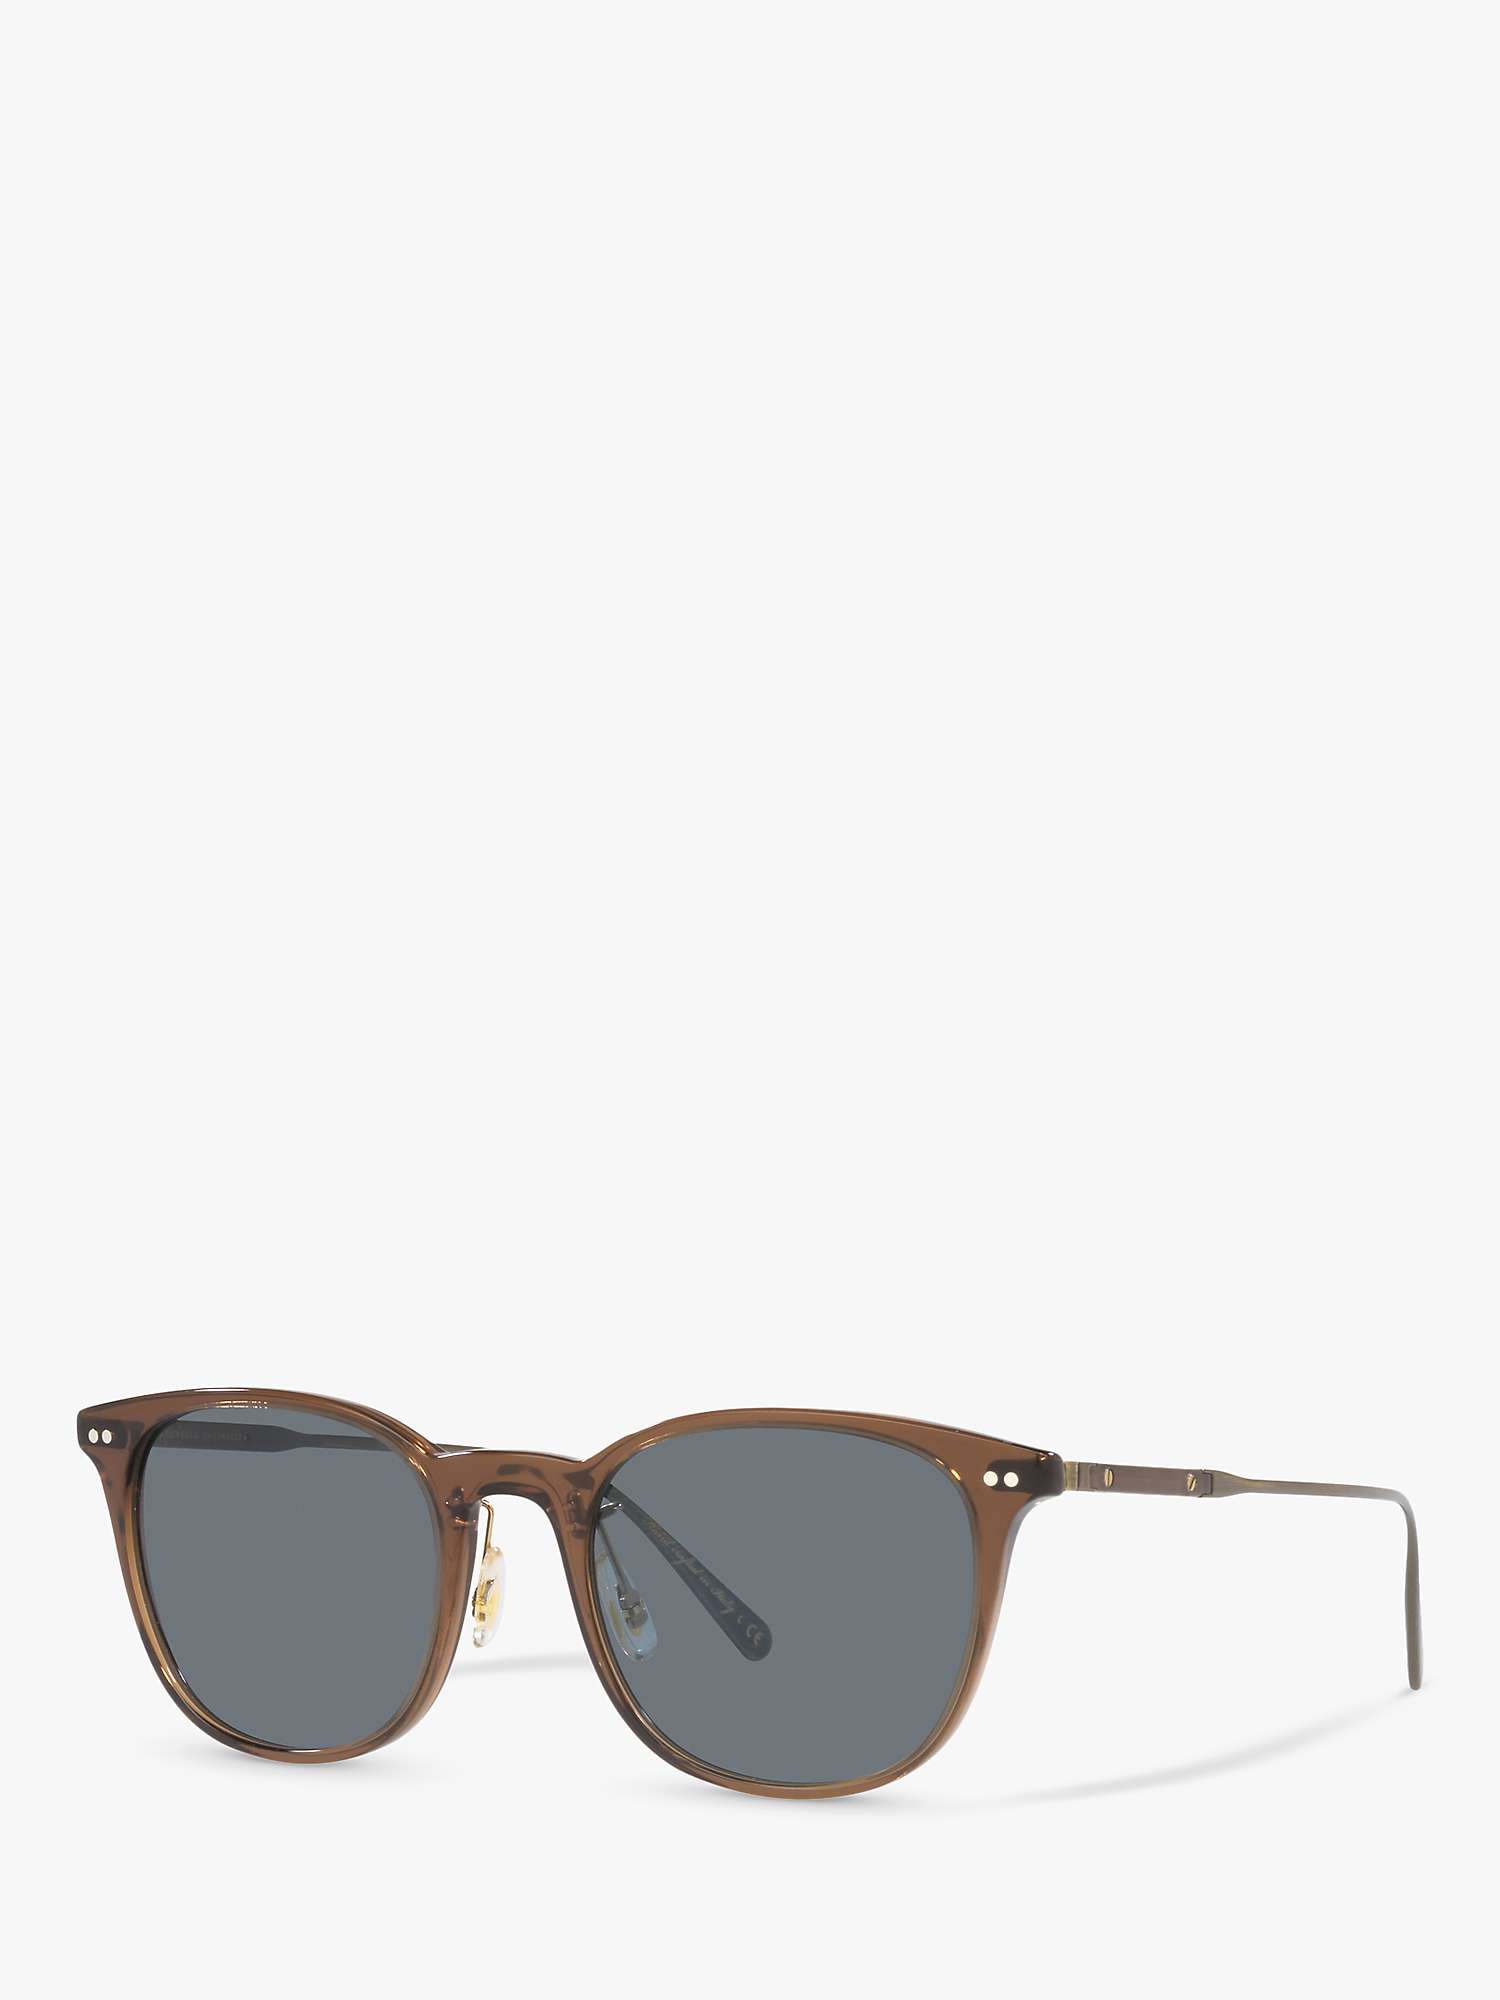 Buy Oliver Peoples OV5482S Men's Gerardo sunglasses, Translucent Brown Online at johnlewis.com